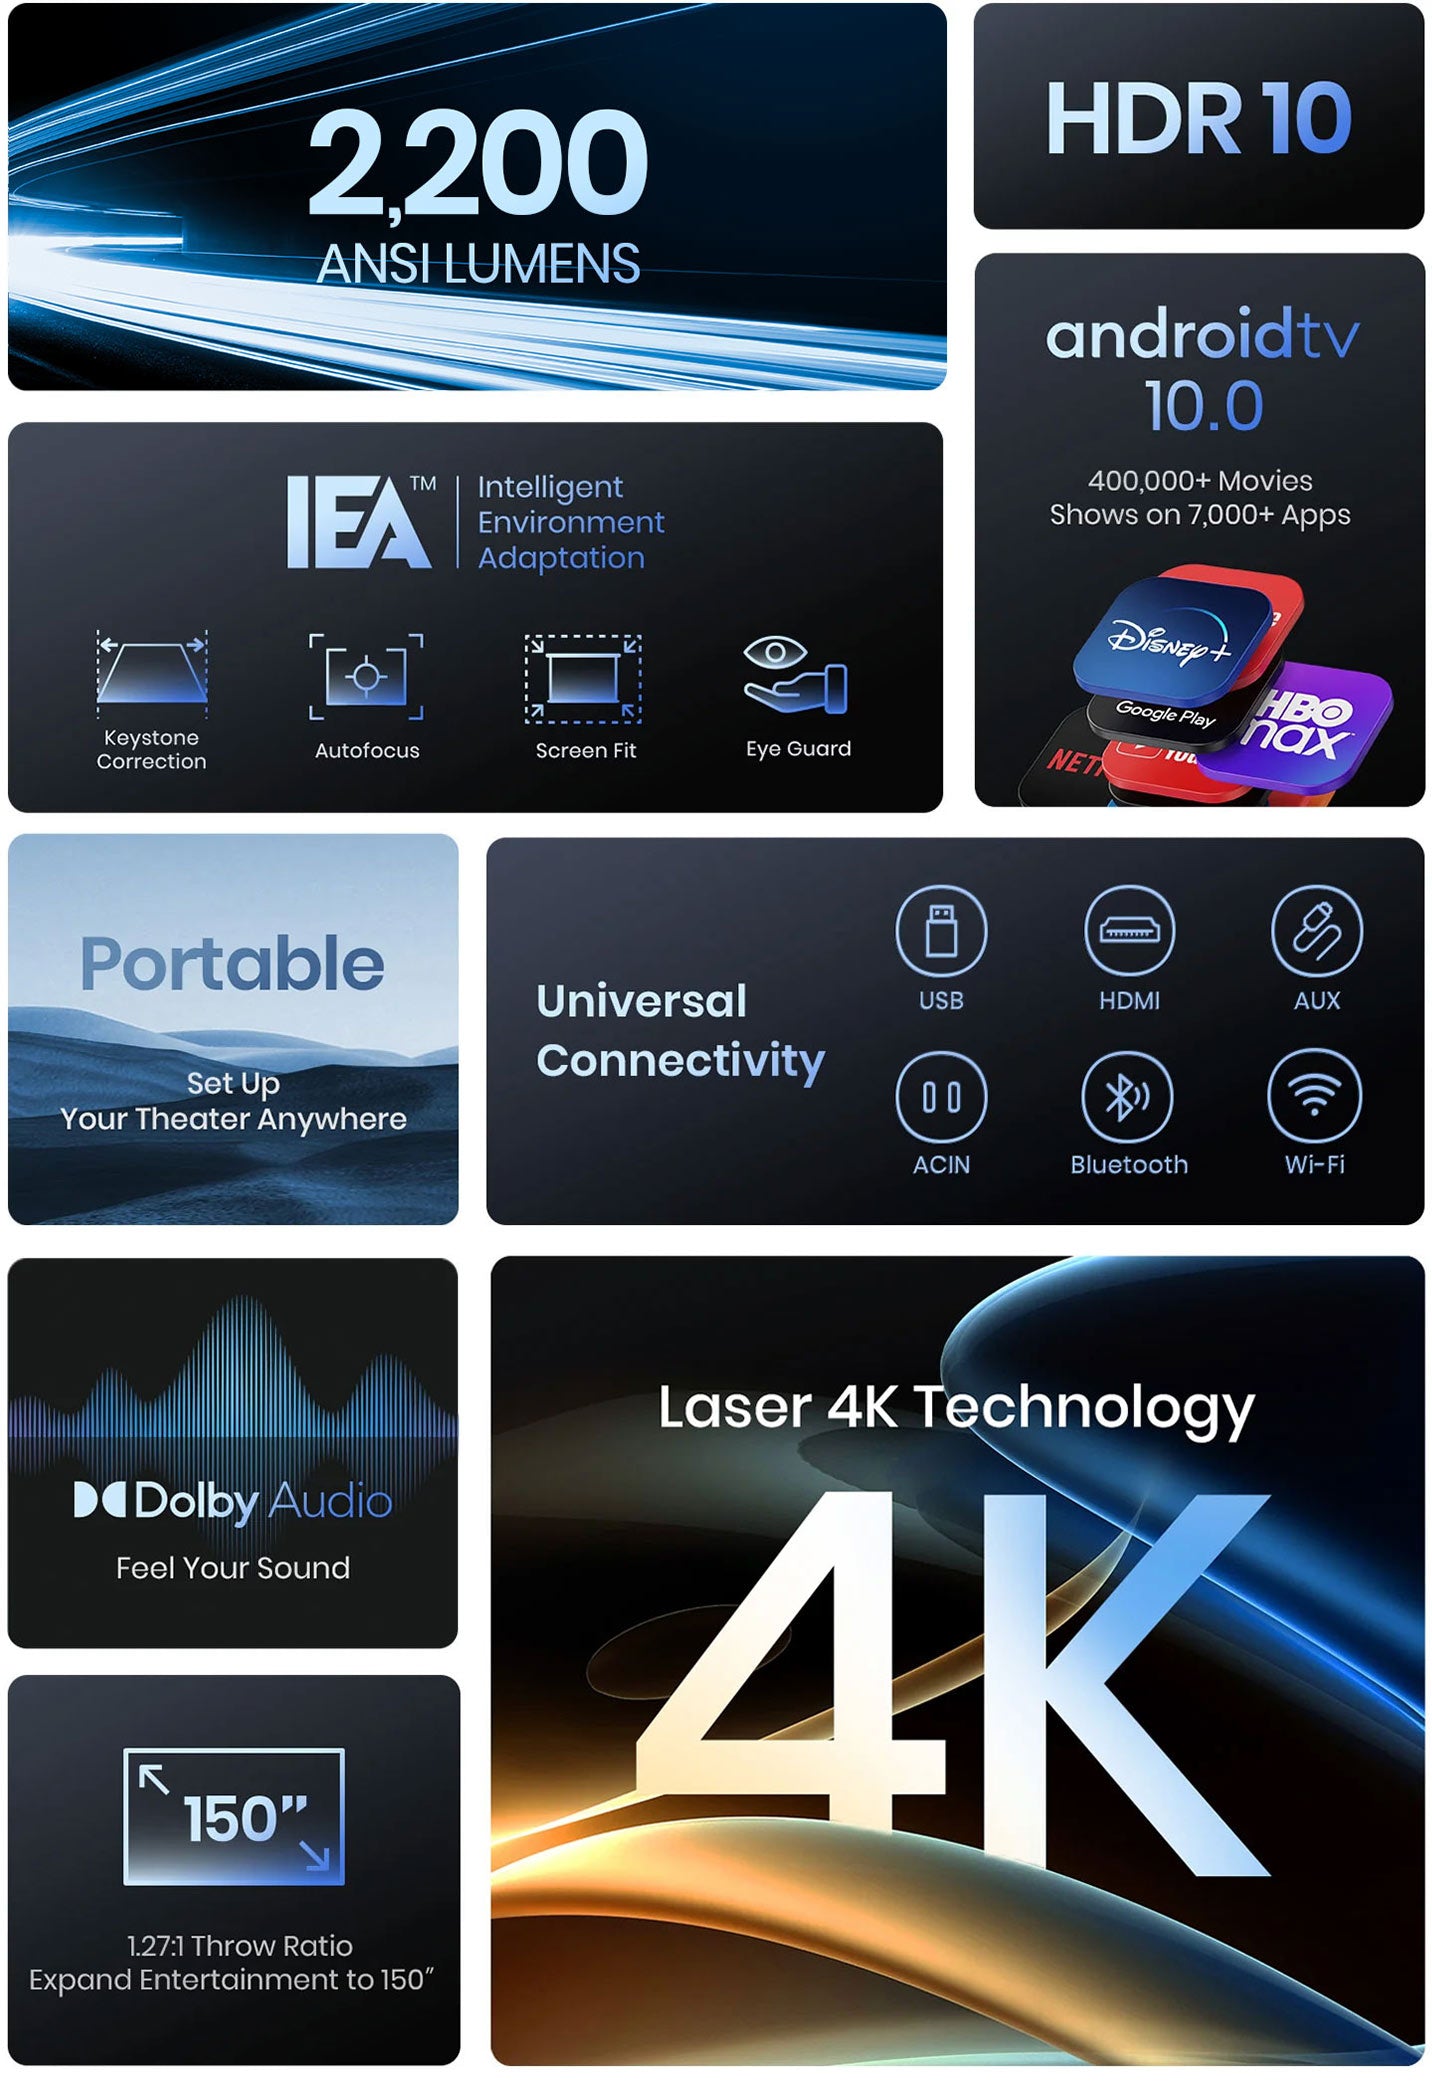  NEBULA Anker Cosmos Proyector láser 4K (actualizado), 2200  lúmenes ANSI, Android TV 10.0 con dongle, enfoque automático, corrección  trapezoidal automática, ajuste de pantalla, proyector de cine en casa con  Wi-Fi y